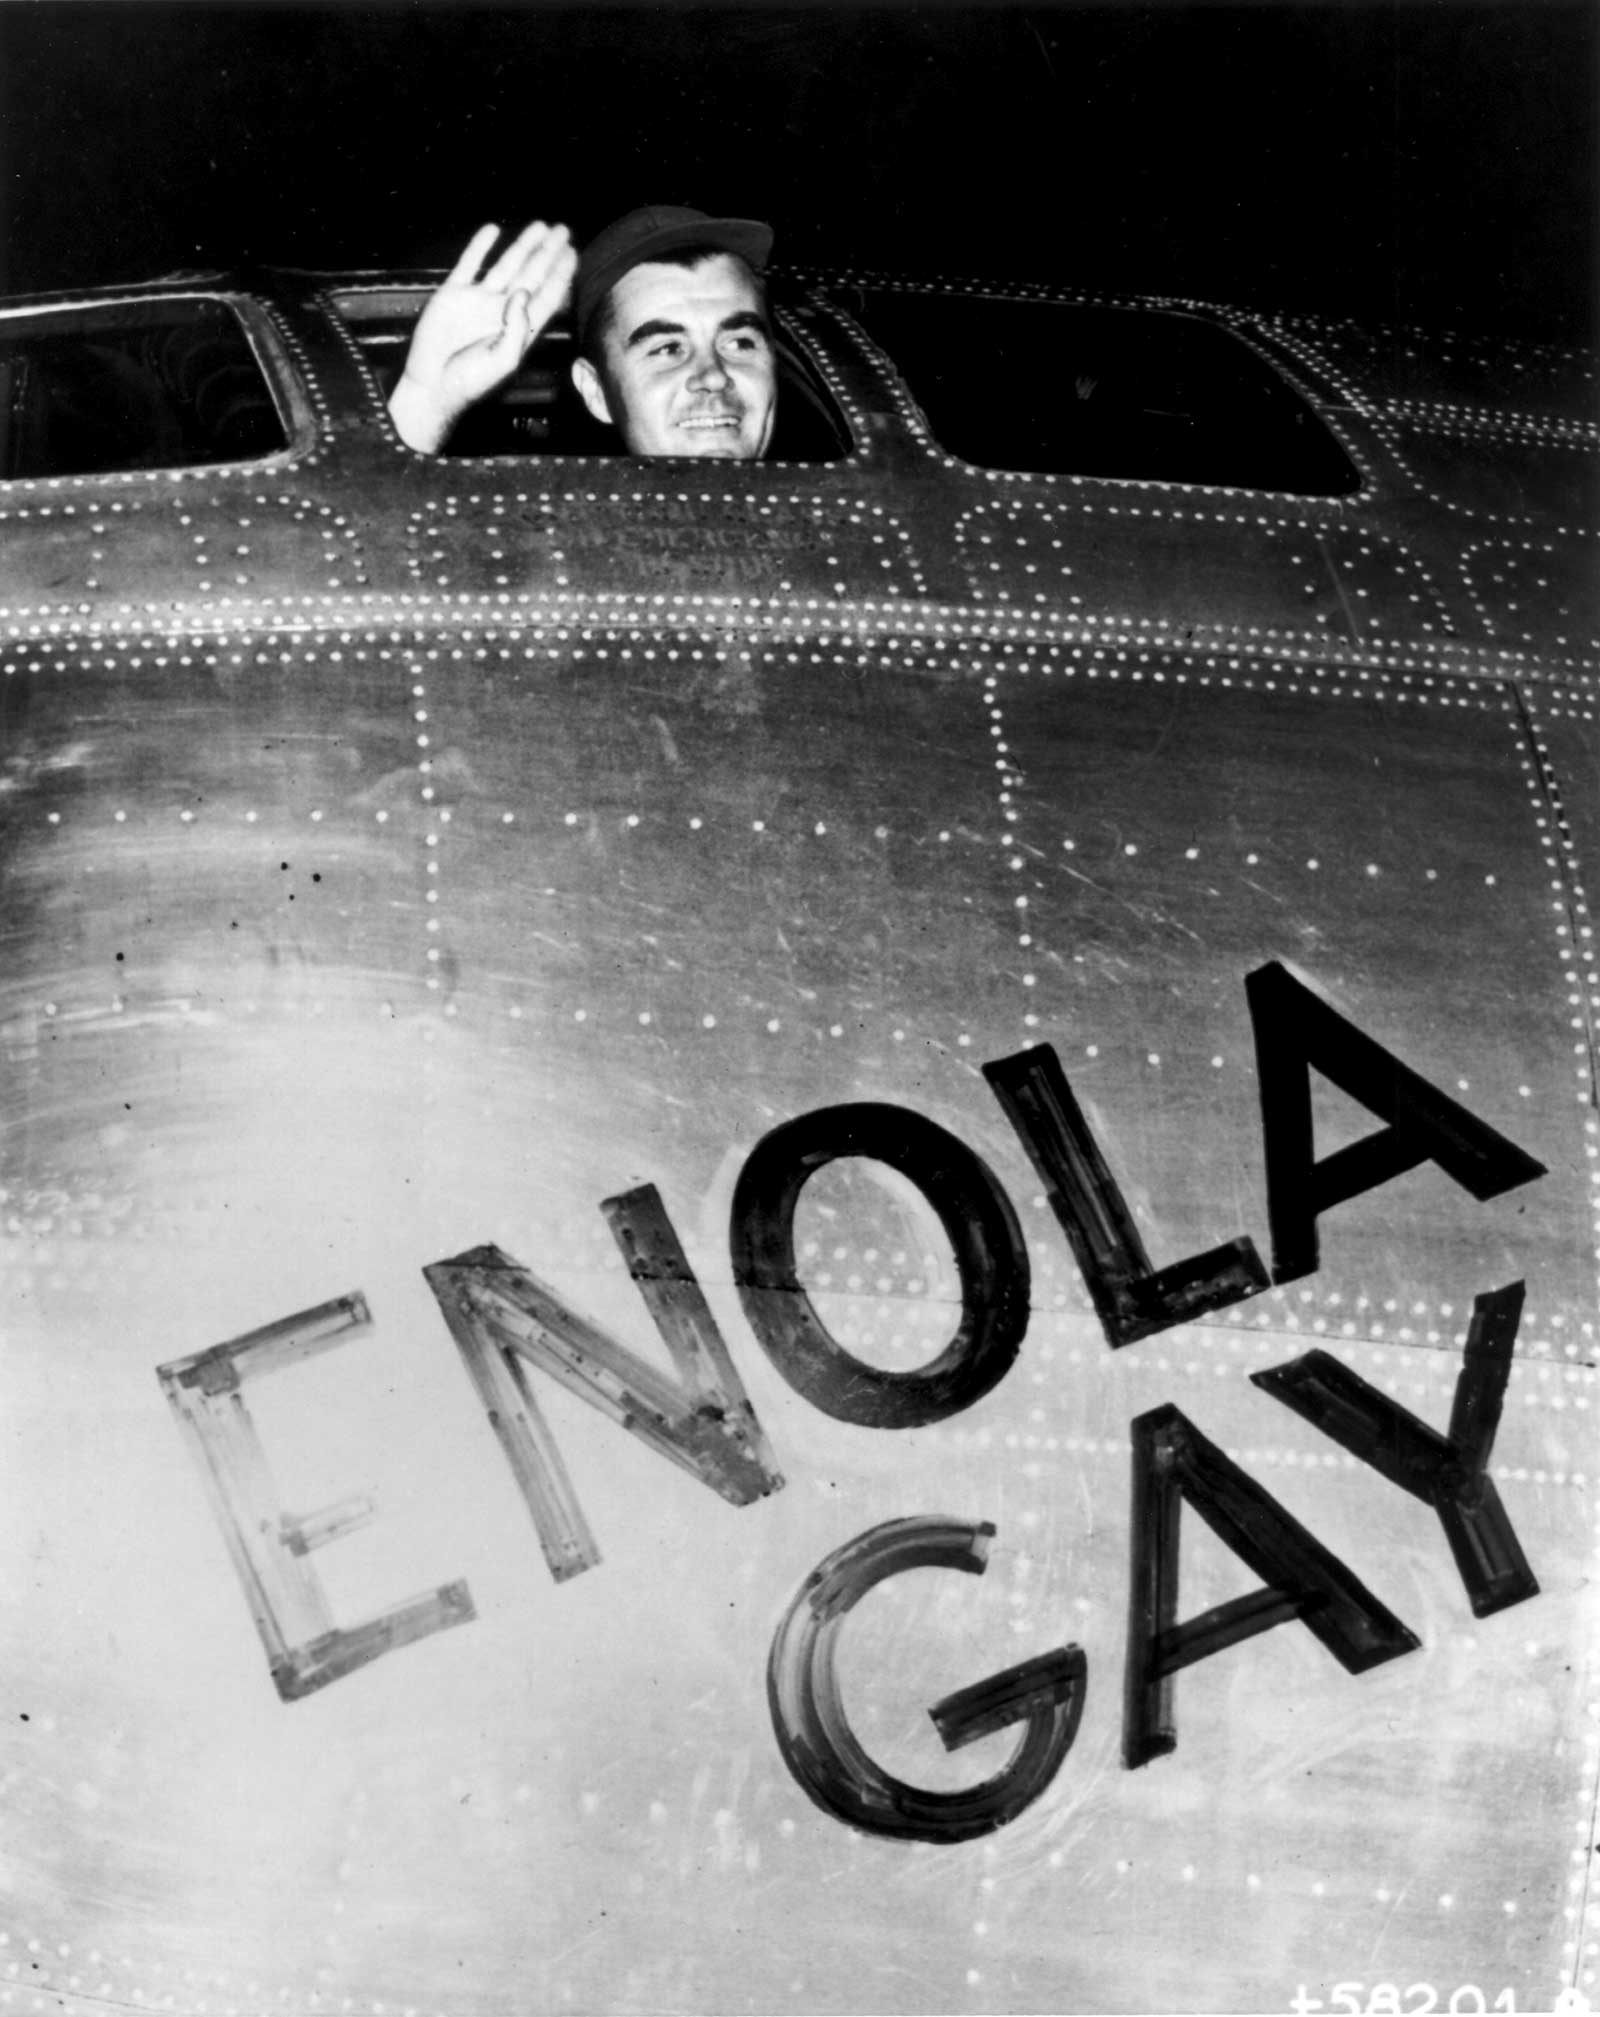 1945 crew of the enola gay